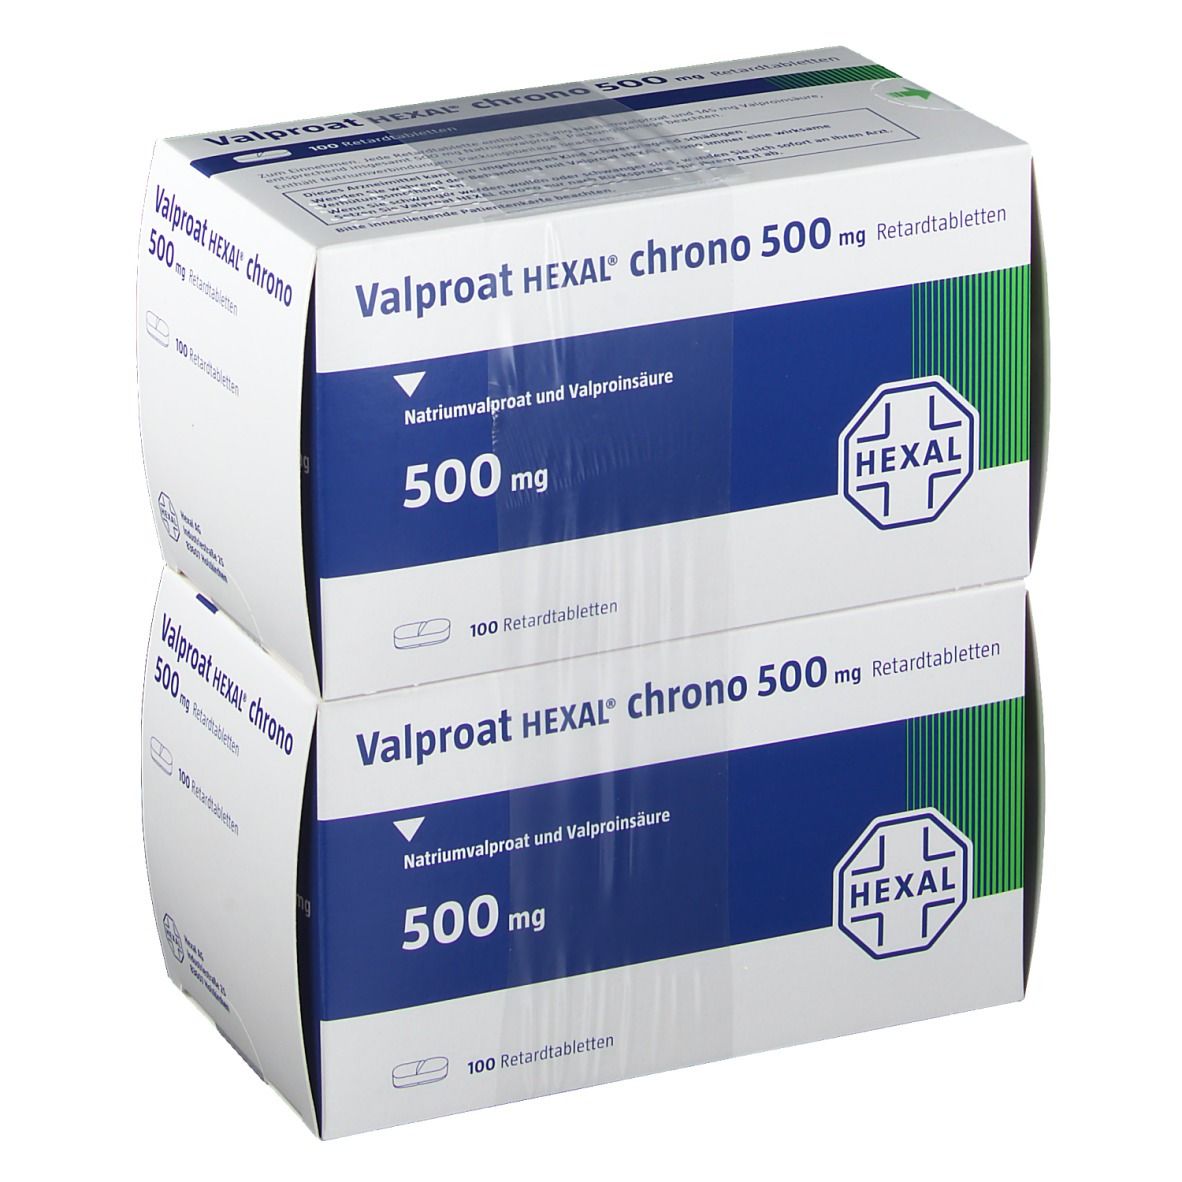 Valproat HEXAL® chrono 500 mg